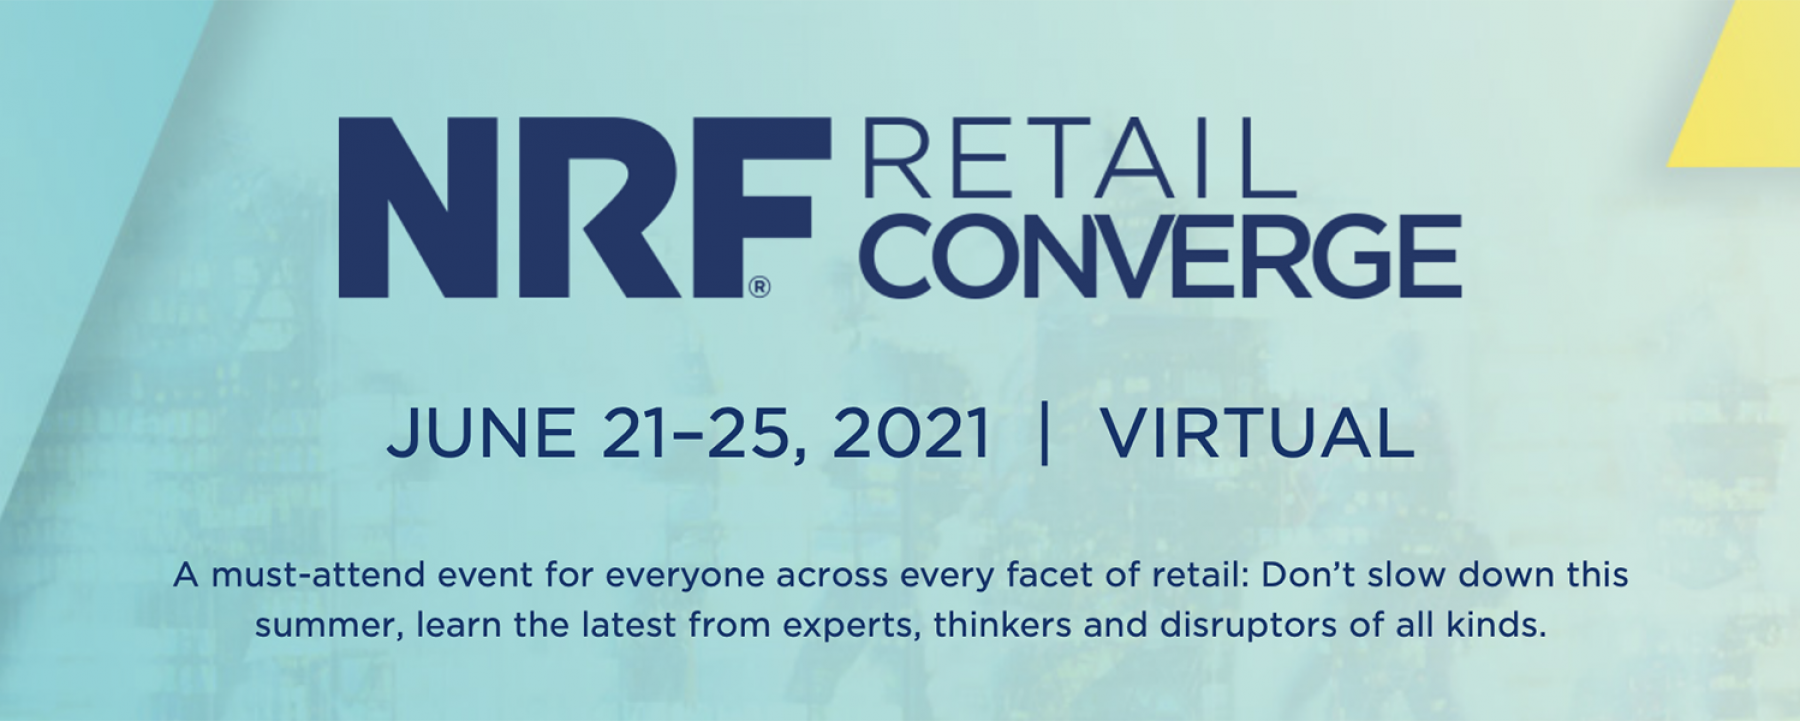 NRF Retail Converge, du 21 au 25 juin 2021